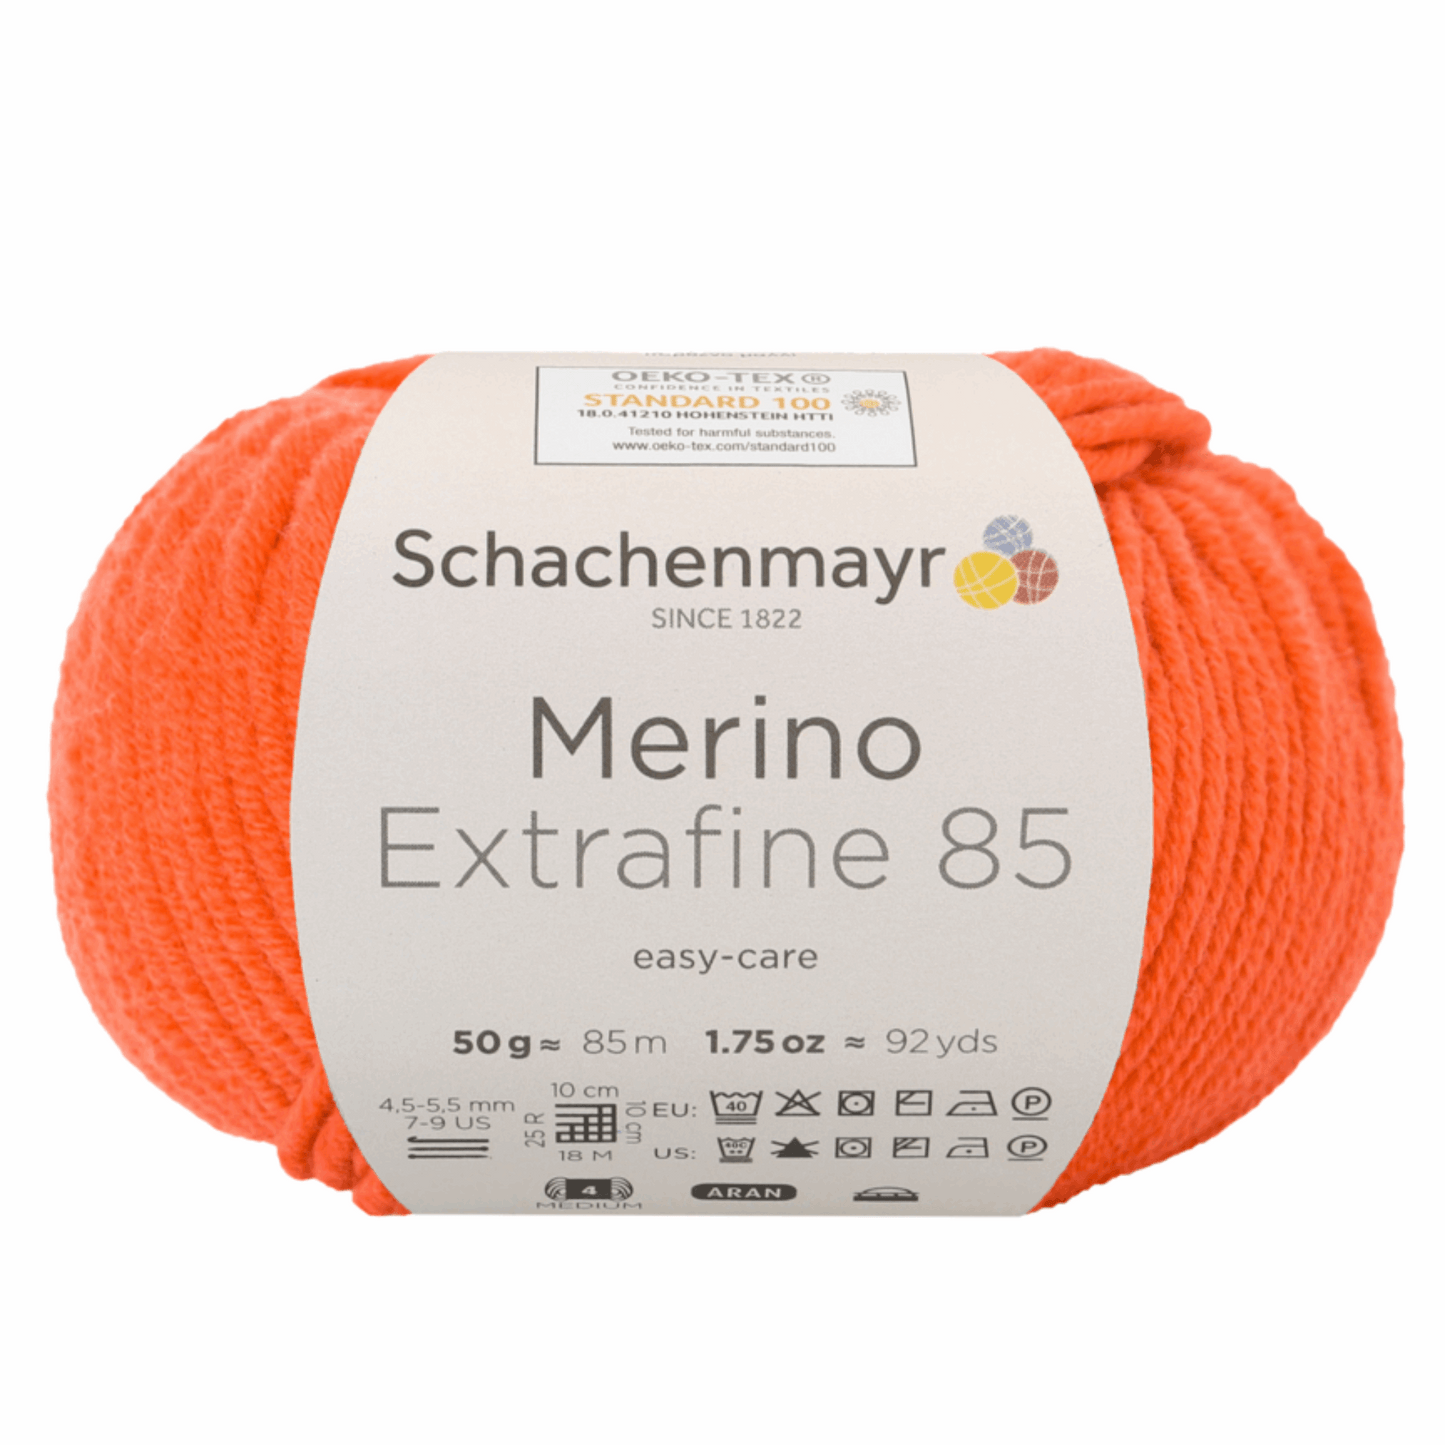 Schachenmayr Merino extrafine 85 50G, 90554, Farbe orange 225